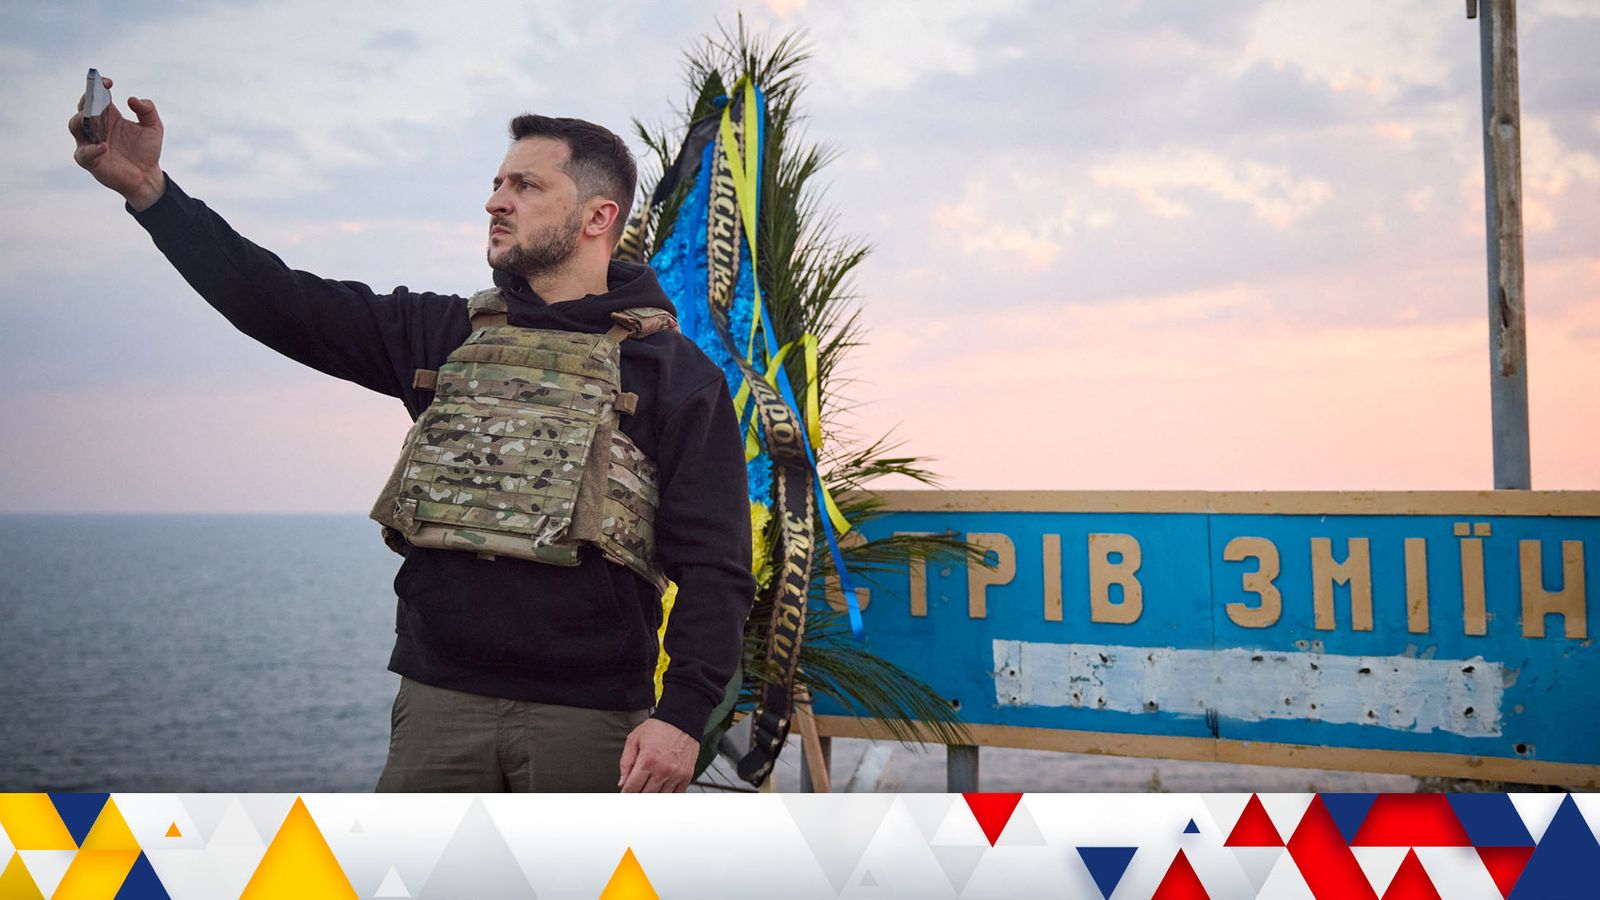 Последняя война на Украине: Киев обещает кассетные бомбы;  Ополчение Вагнера «Готовится к переезду в Беларусь» |  Мировые новости